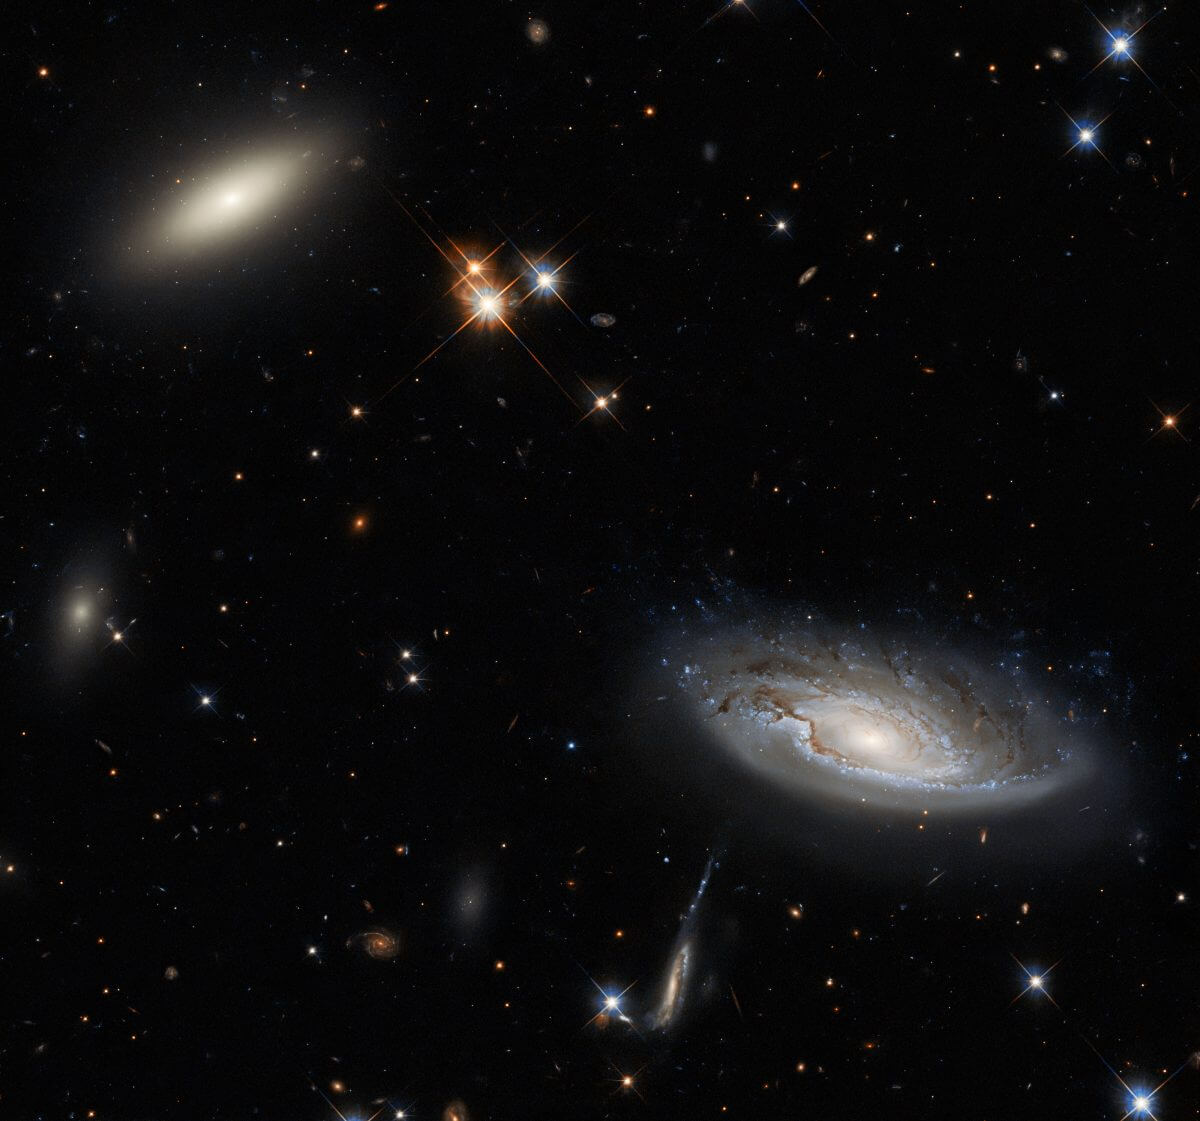 ハッブル宇宙望遠鏡が撮影、ペルセウス座銀河団の一角で輝く渦巻銀河とレンズ状銀河